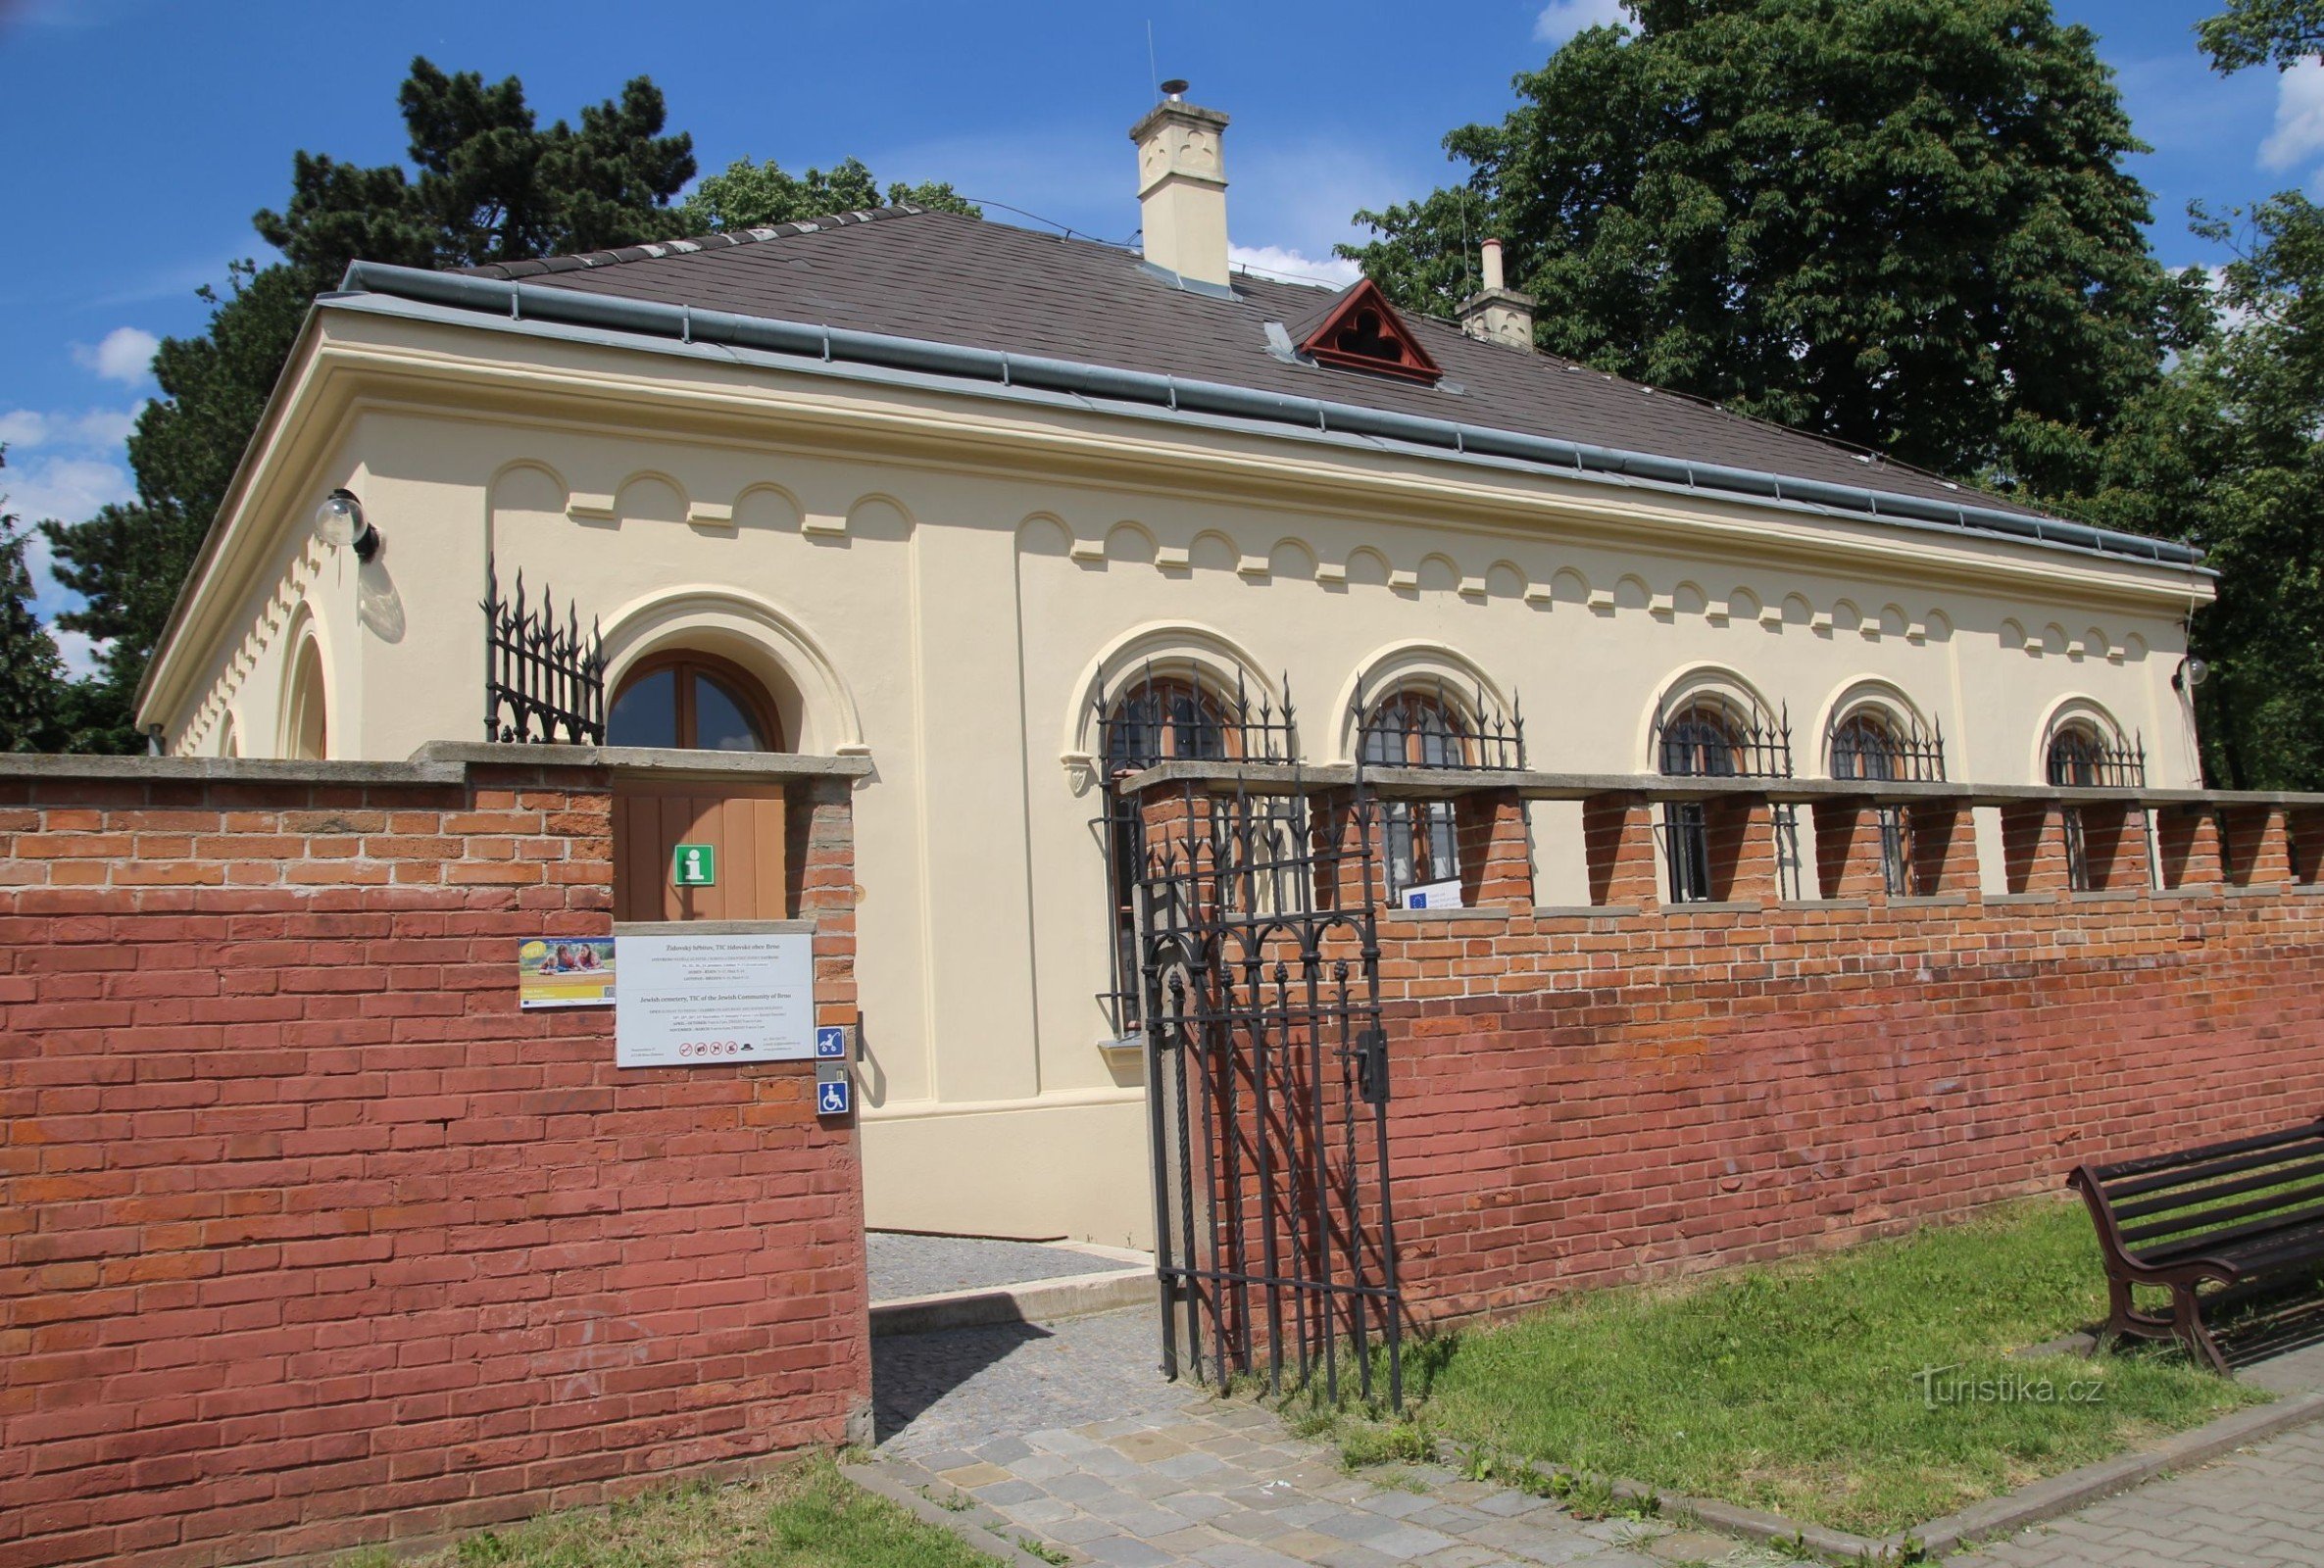 Cmentarz Brno-Żydowski - centrum informacyjne